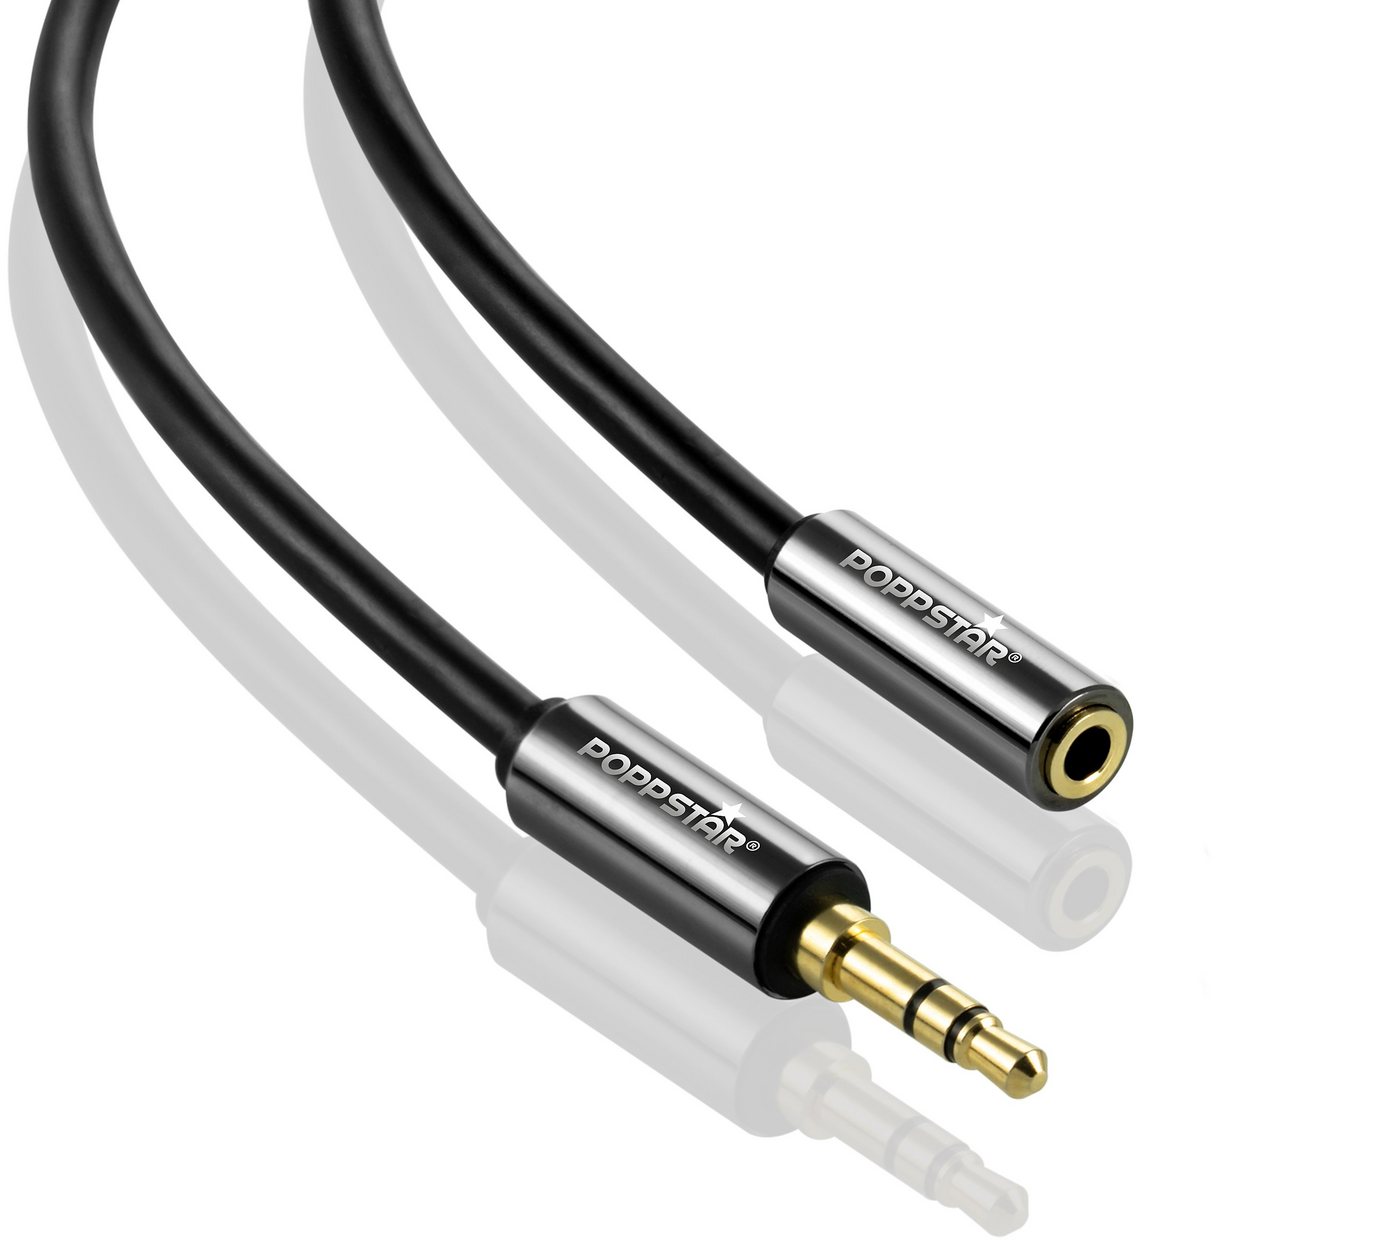 Poppstar Audio Kabel Klinke 3,5mm Klinkenkabel Stecker auf Buchse Audio-Kabel, 3,5-mm-Klinke, 3,5-mm-Klinke (1500 cm), Verlängerungskabel für Kopfhörer Smartphone MP3-Player Kfz Autoradio von Poppstar